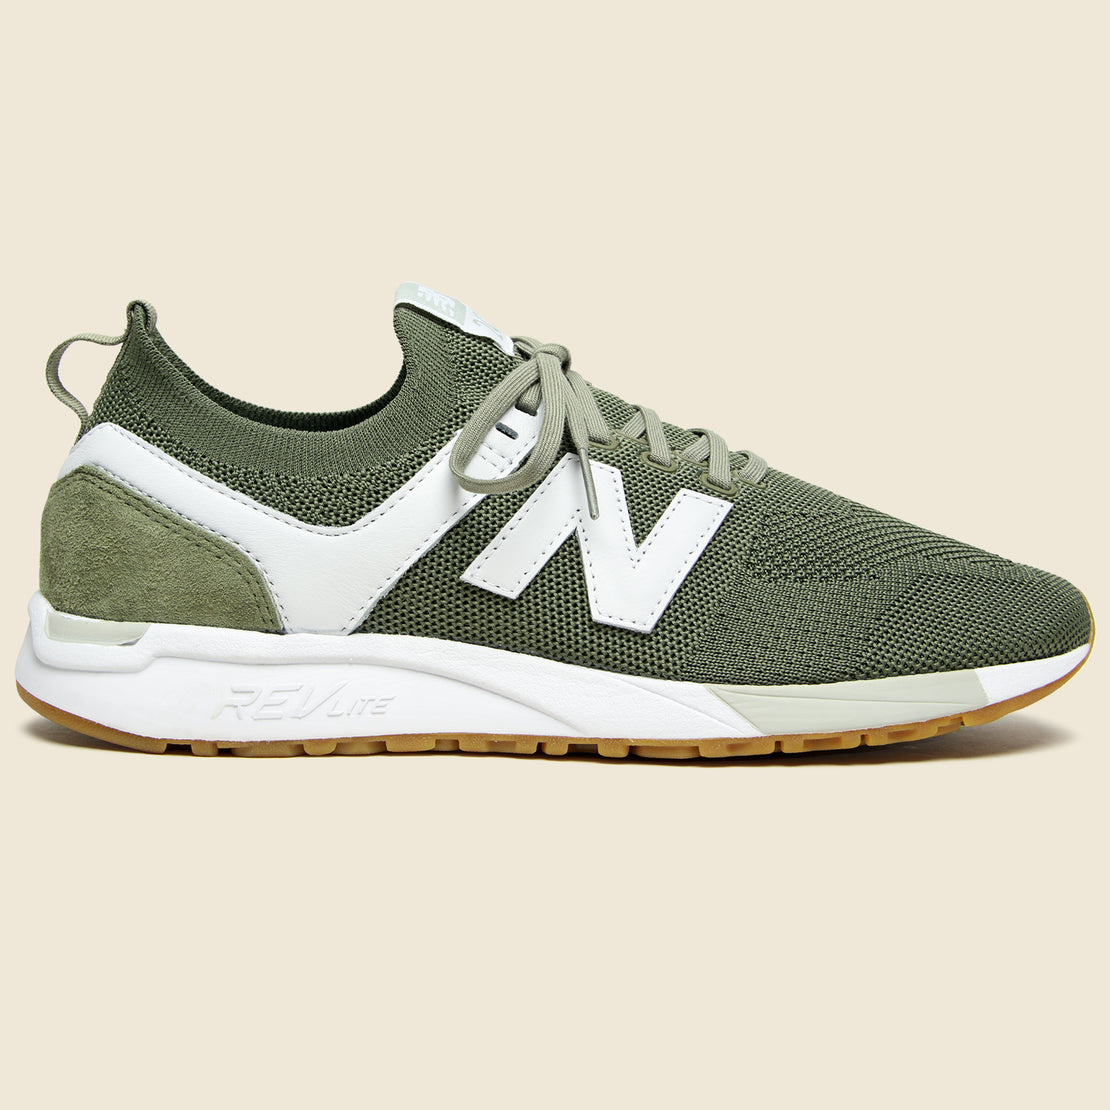 New Balance 247 Sneaker - Covert Green/White